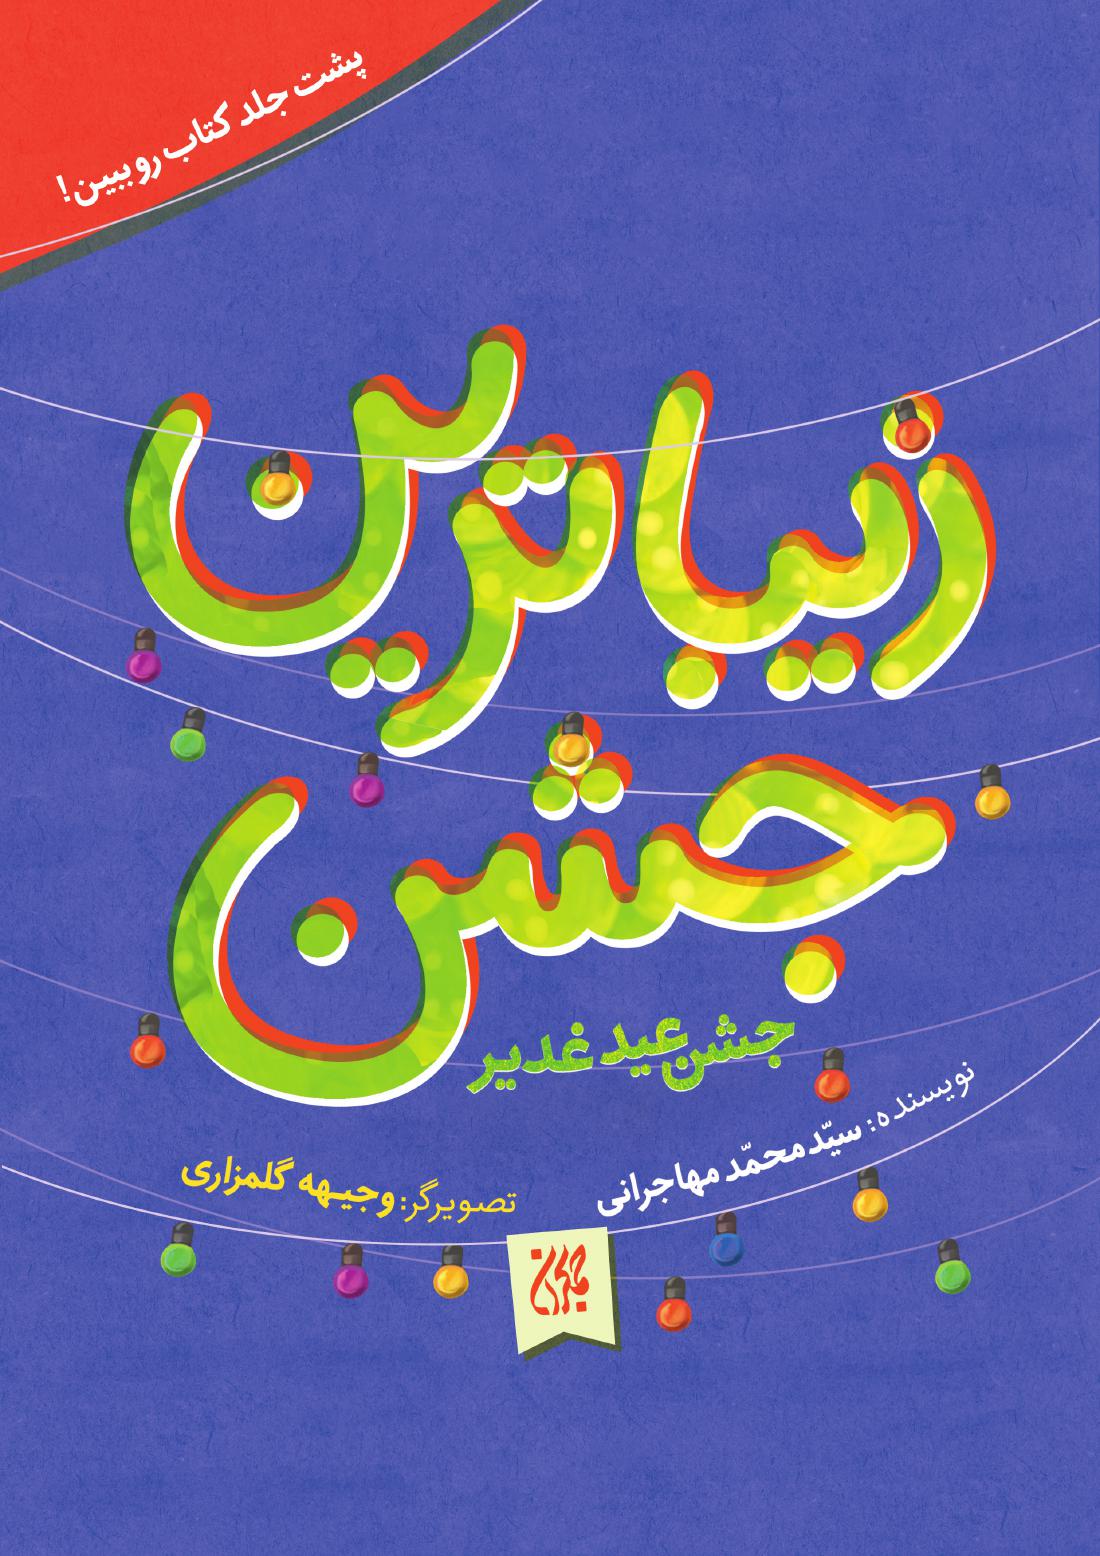 زیباترین جشن:جشن عید غدیر | شبکه دانی